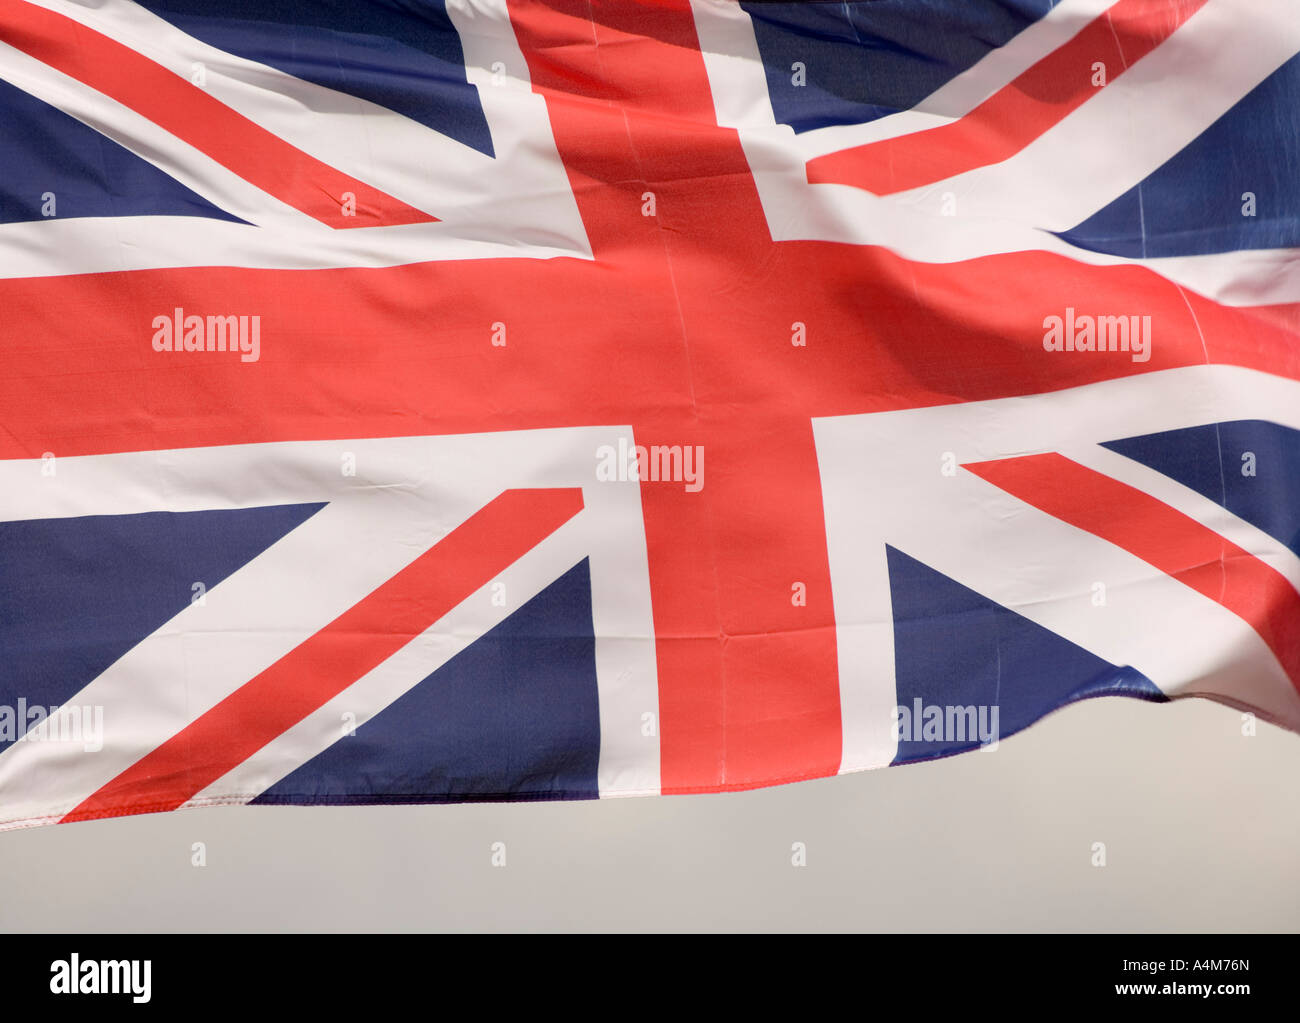 Union Jack flag du Royaume-Uni de Grande-Bretagne et d'Irlande du Nord Banque D'Images